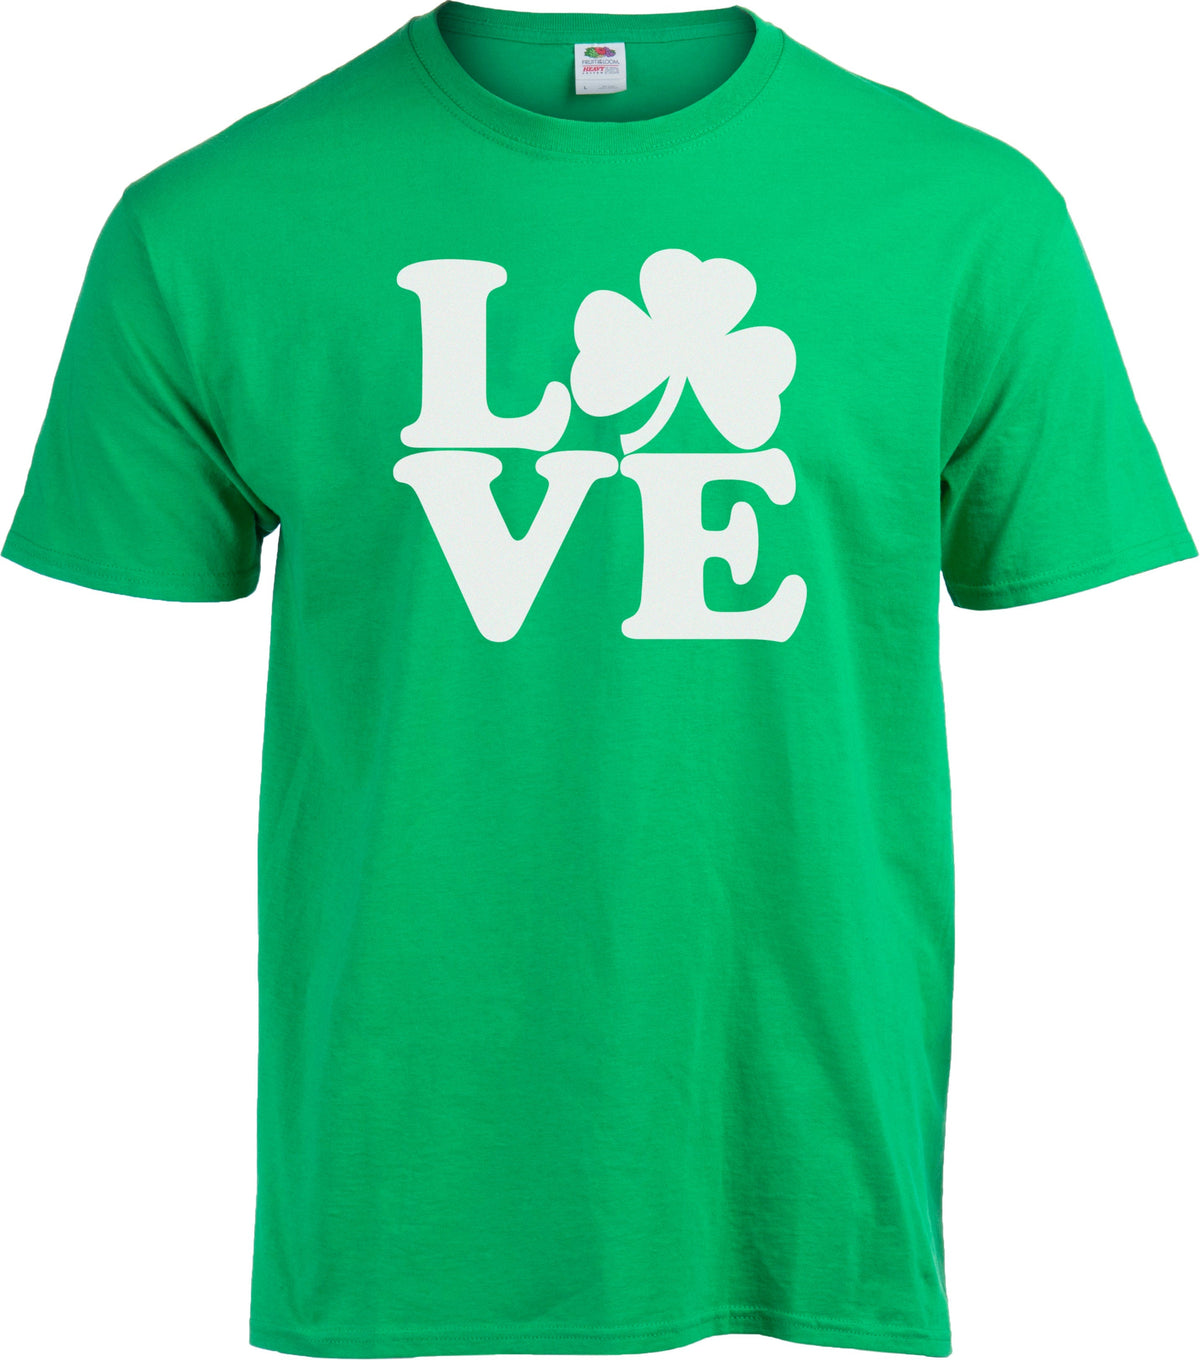 Love Shamrock - Irish Pride Ireland St. Patrick's Day Love T-shirt - Kid's/Youth